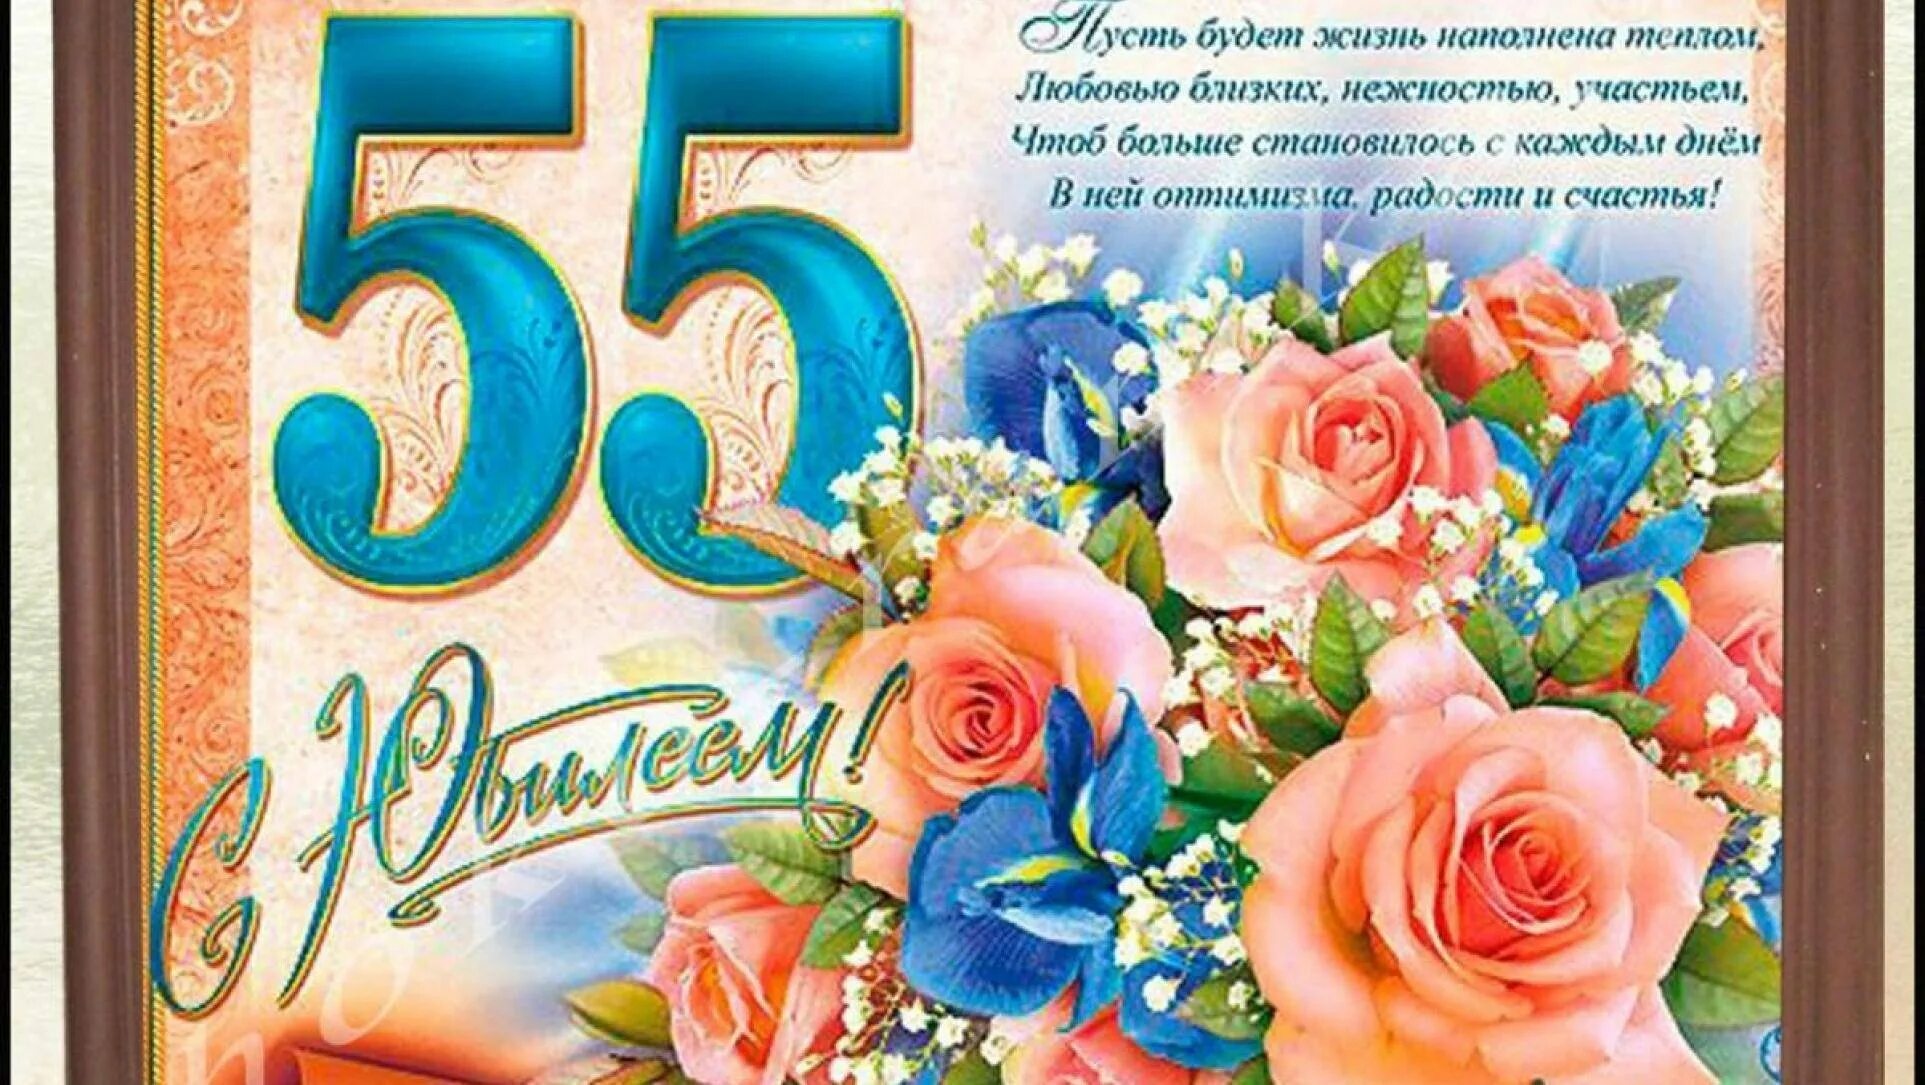 Поздравления друзей 55 лет. С юбилеем 55. Поздравление с юбилеем 55 женщине. Открытка "с юбилеем! 55". Открытка с юбилеем 55 лет женщине с поздравлением.